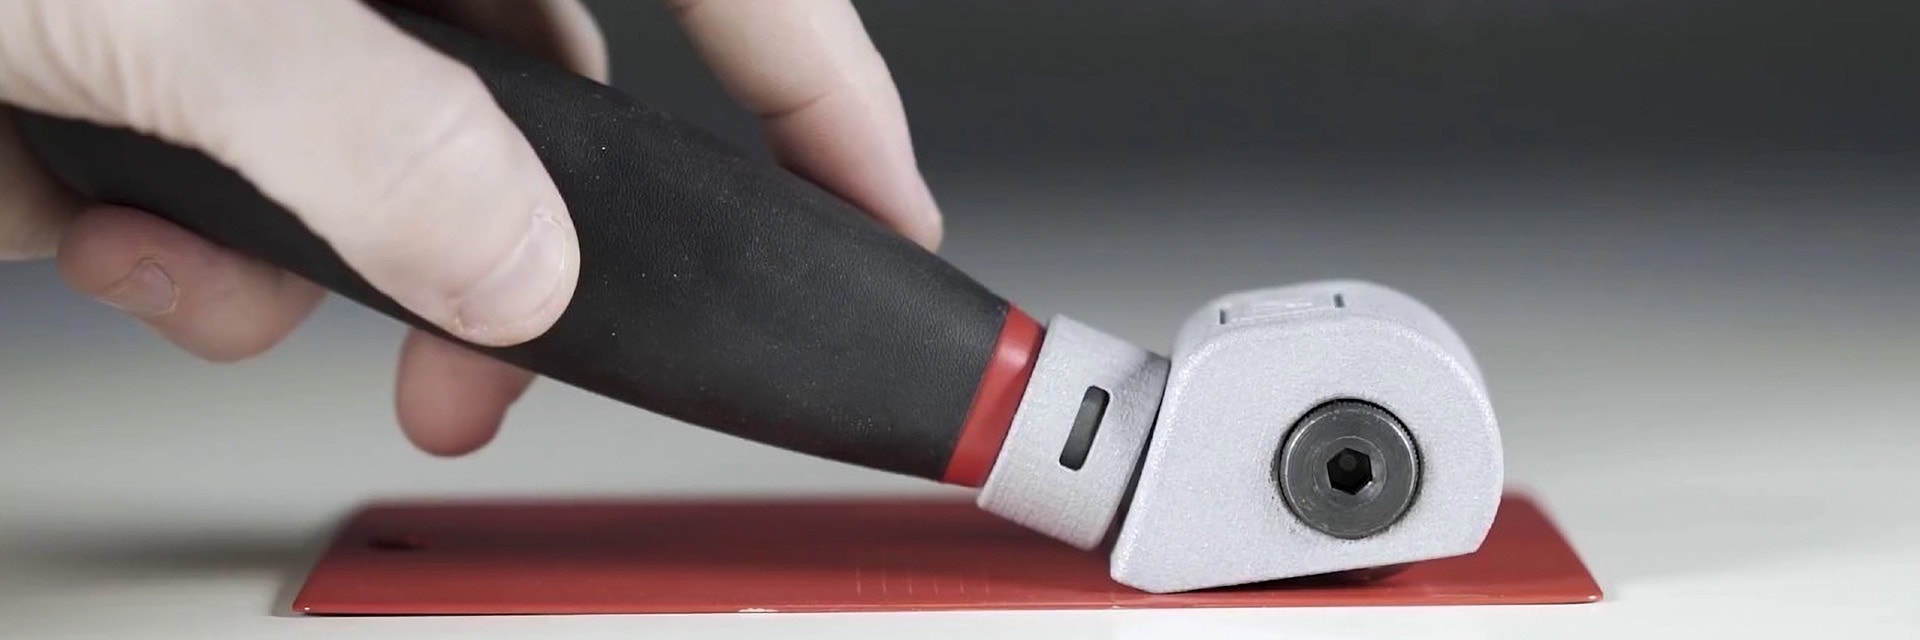 Eine Hand, die das NEURTEK-Schneidewerkzeug über eine rote Metallplatte zieht.